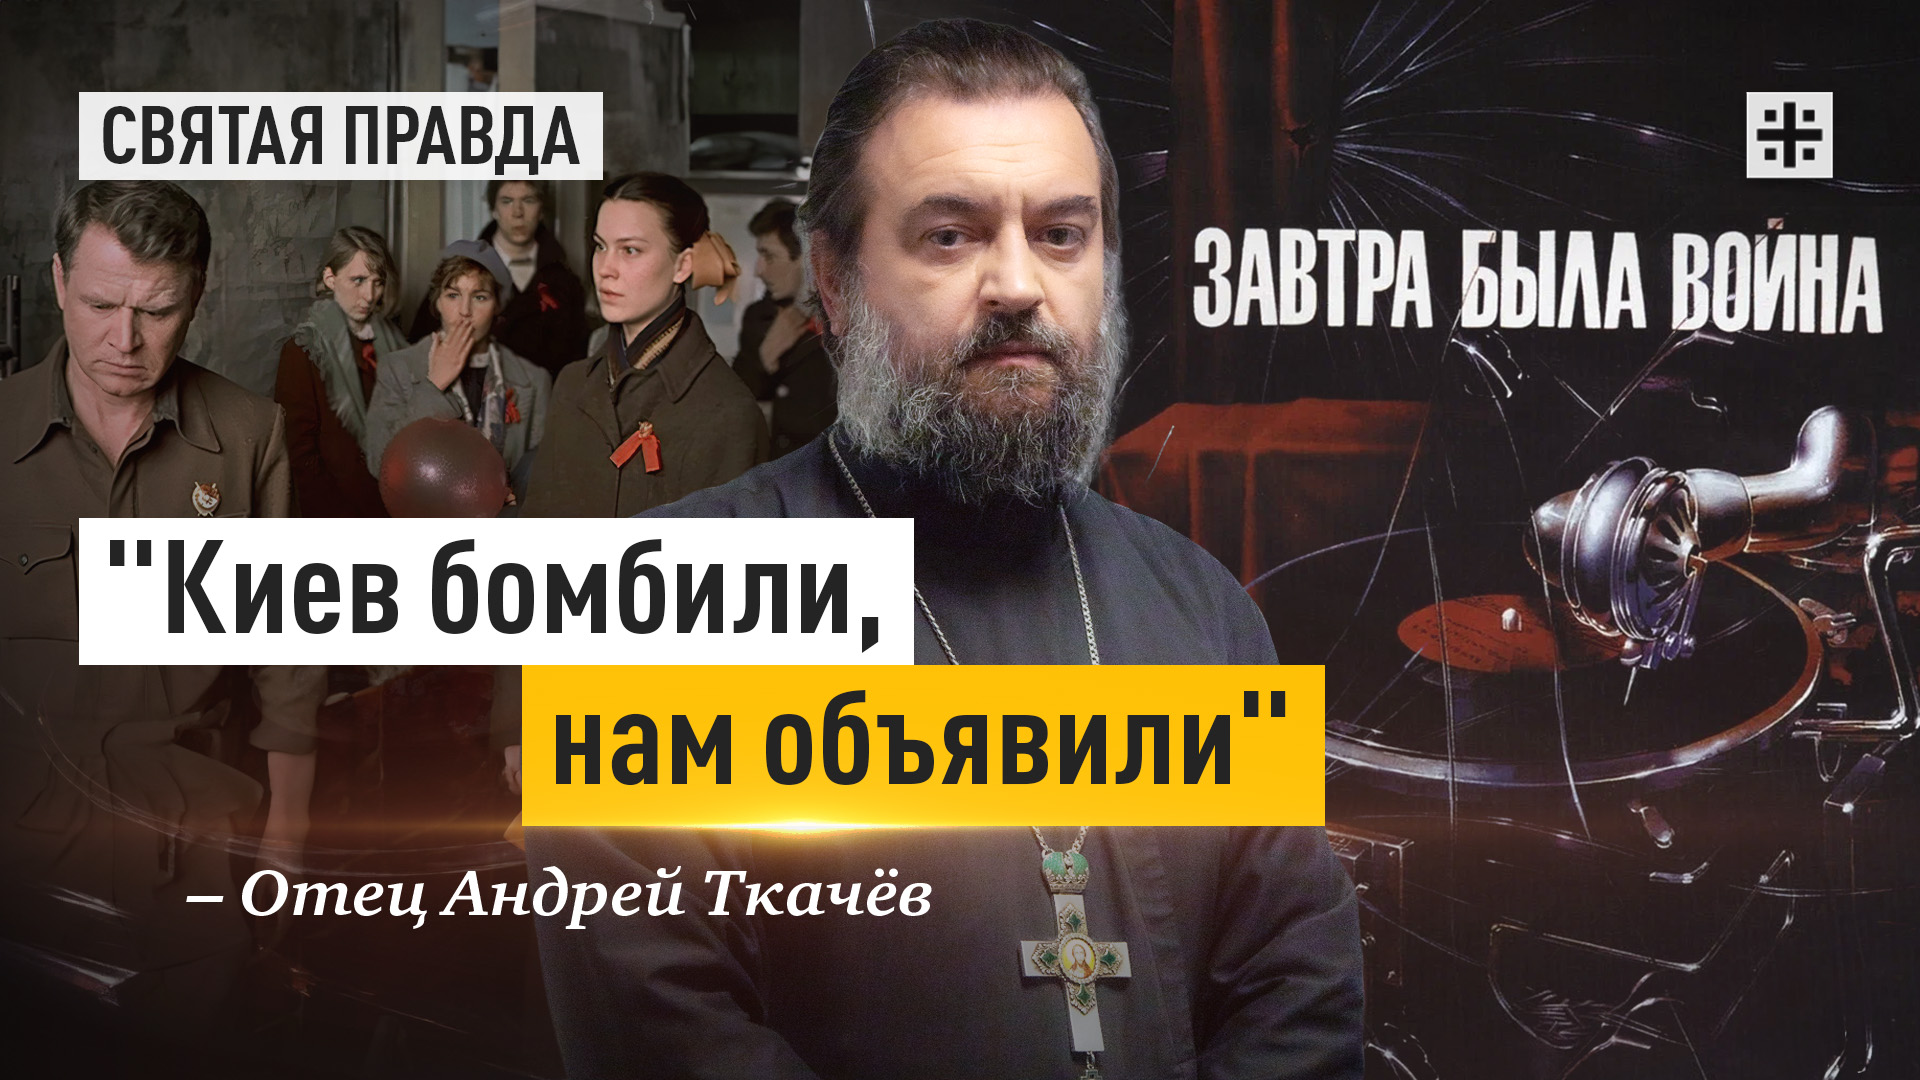 "Киев бомбили, нам объявили": Иди и смотри фильм "Завтра была война" (1987) — отец Андрей Ткачёв